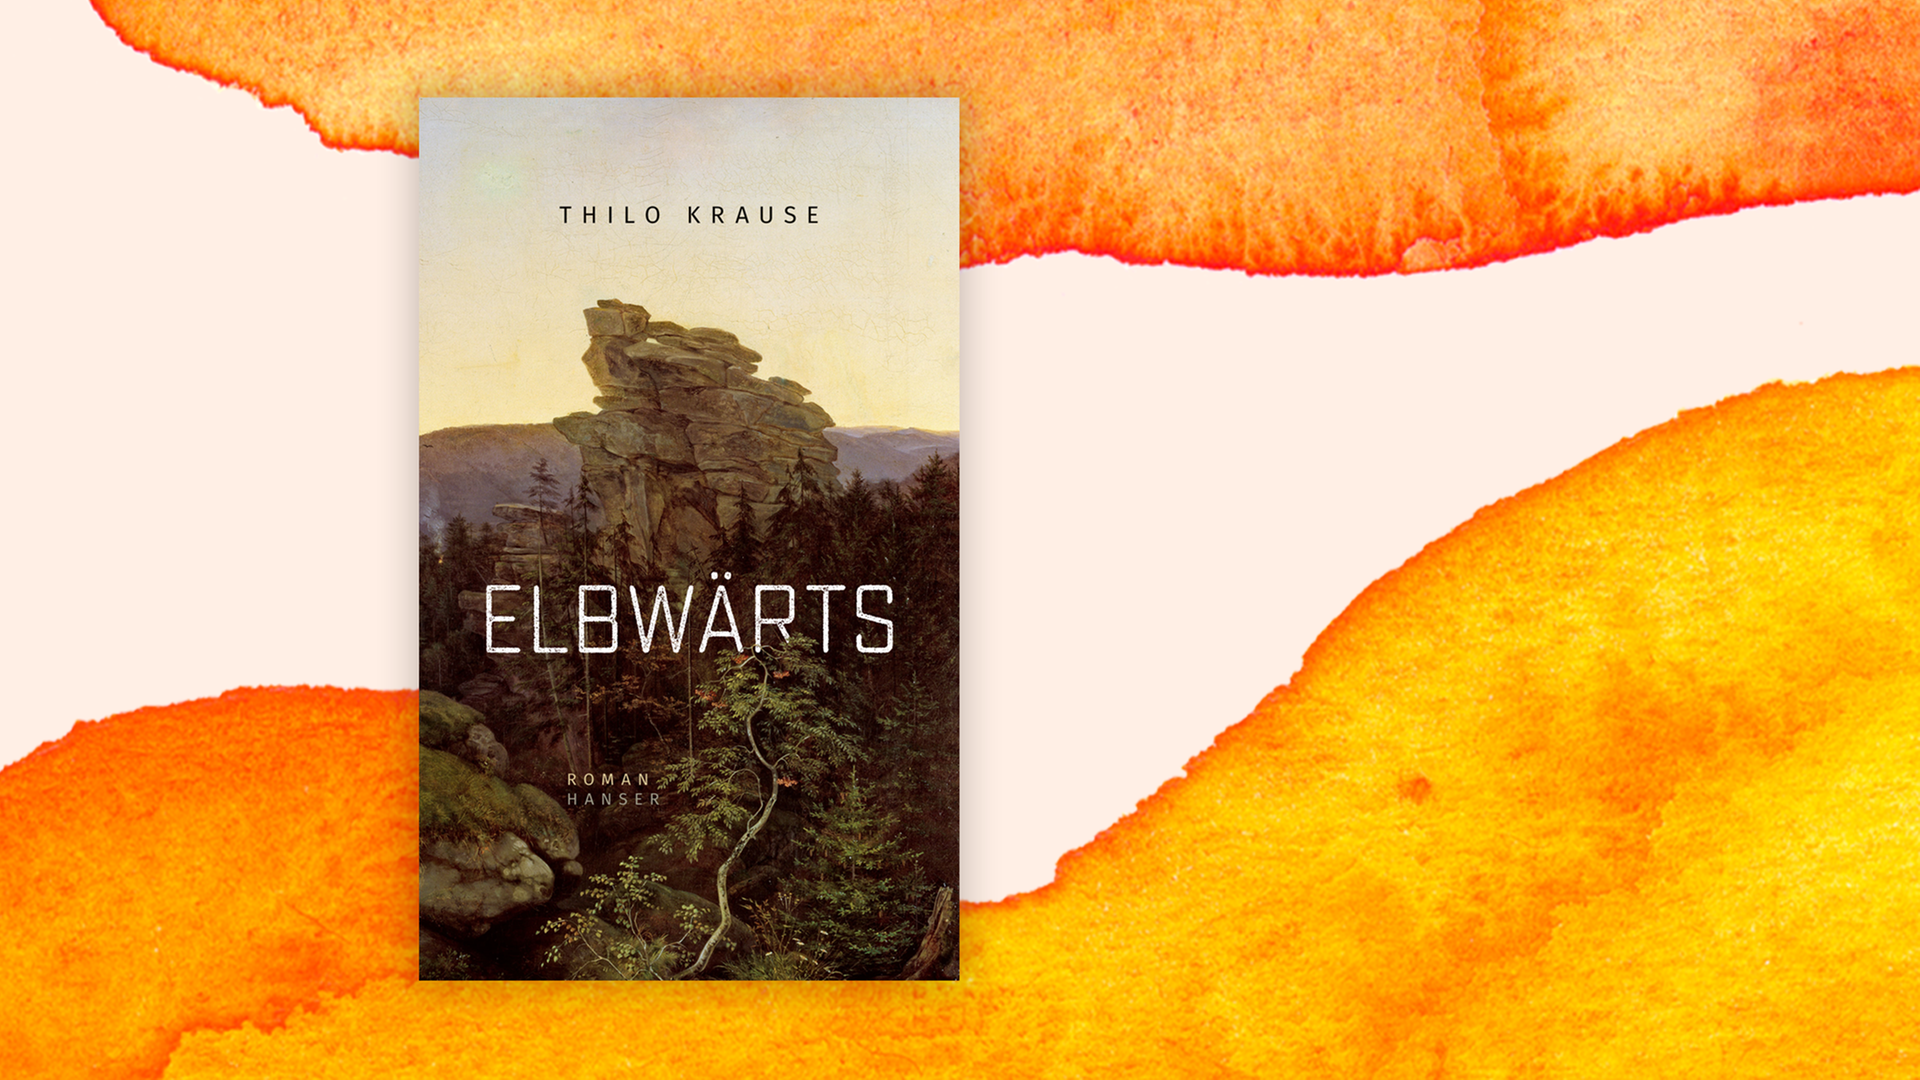 Zu sehen ist das Cover des Buches "Elbwärts" von Thilo Krause.